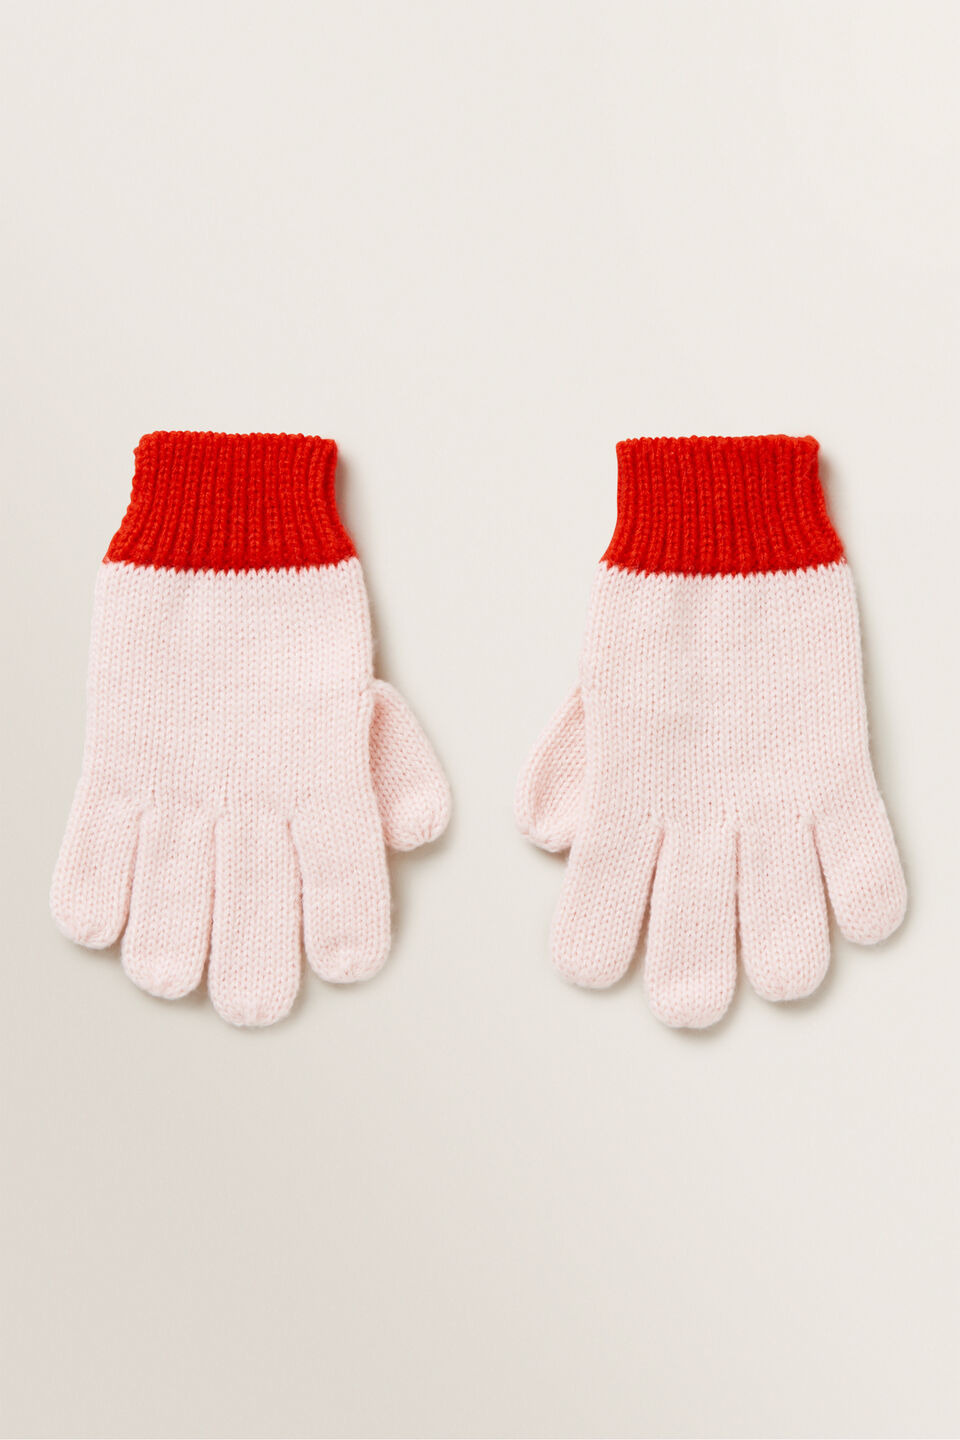 Colour Block Gloves  